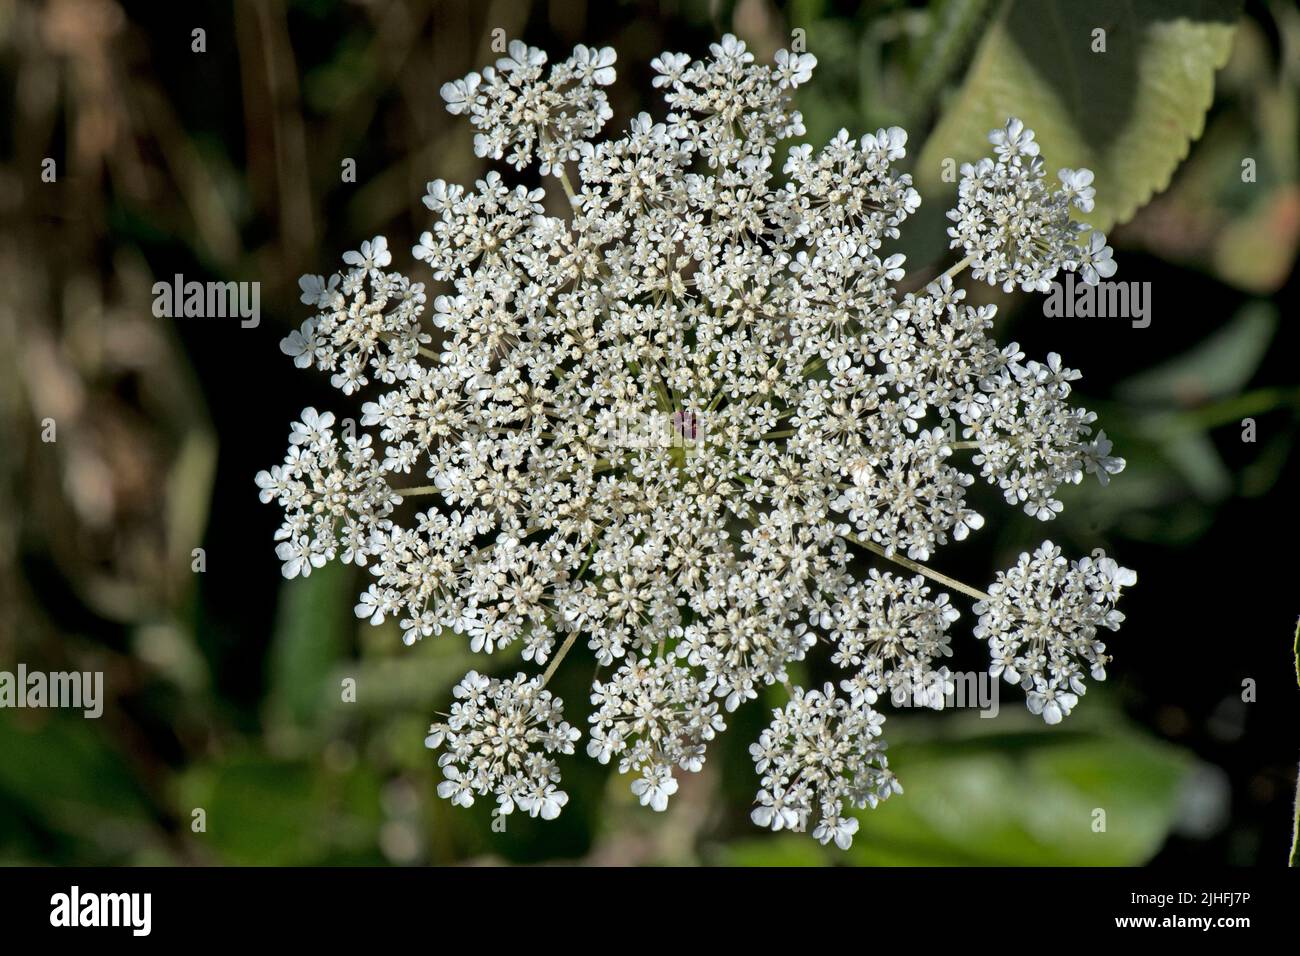 Wilde Karotte oder Königin Annes Spitze (Daucus carota) blühende Dolde aus weißen Blüten mit einer einzigen, nektarhaltigen dunkelroten Blume, in der sich eine dunkelrote Blume befindet, im Juli, in der Grafschaft Bekshire Stockfoto